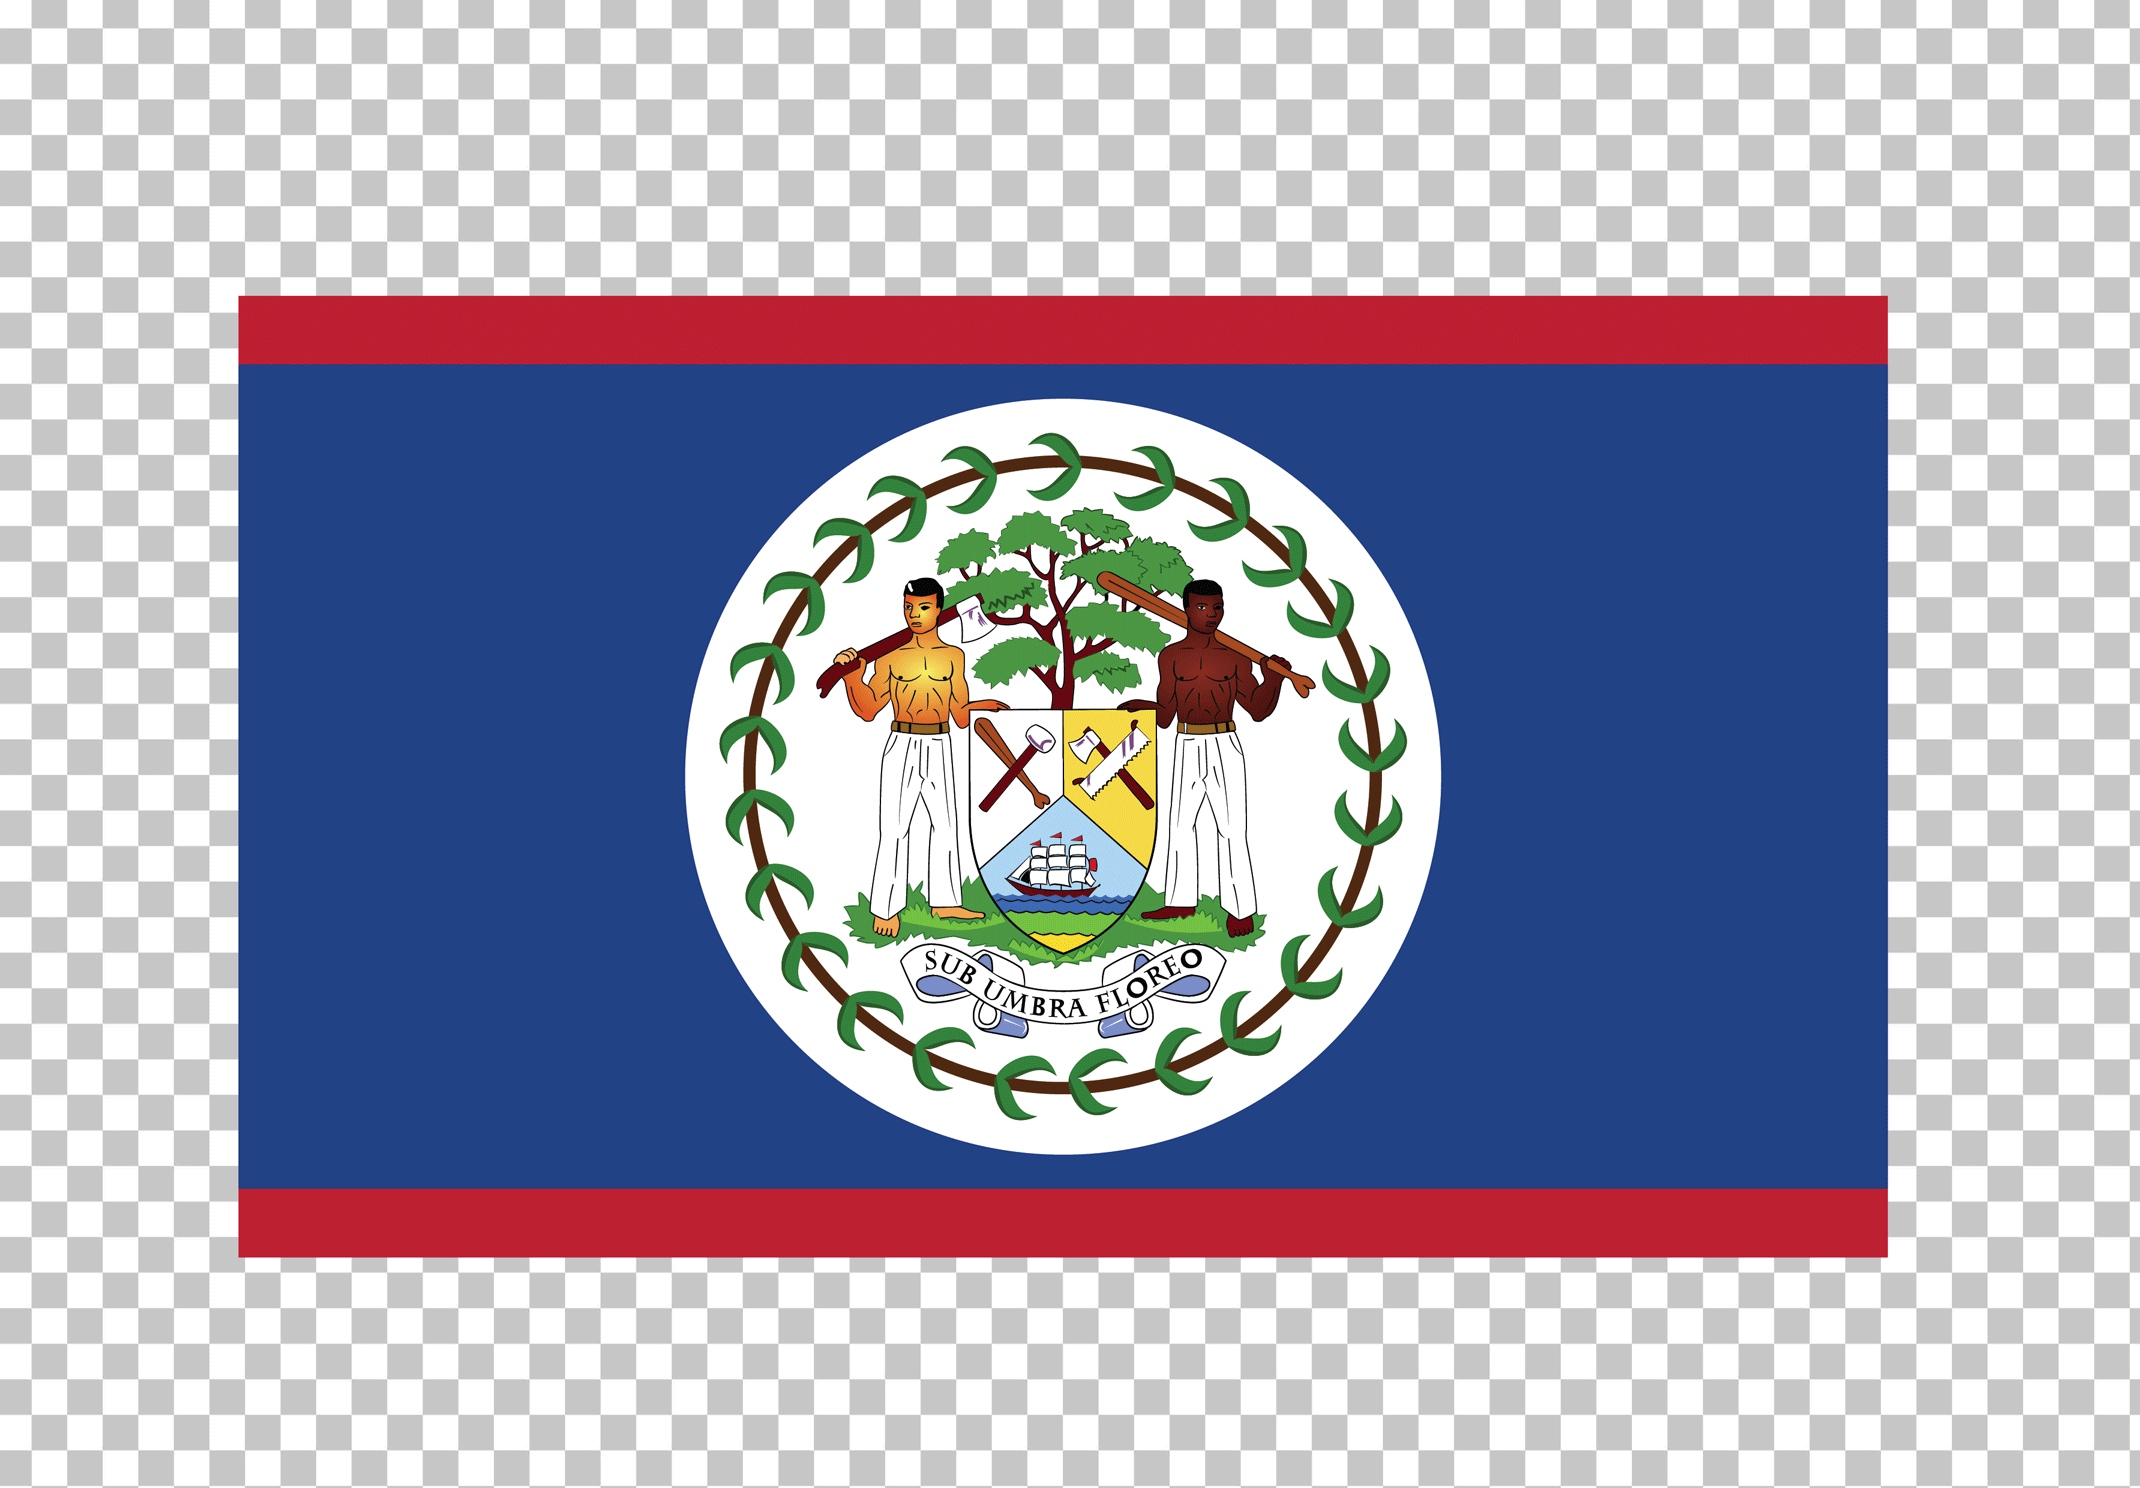 Flag of Belize PNG image